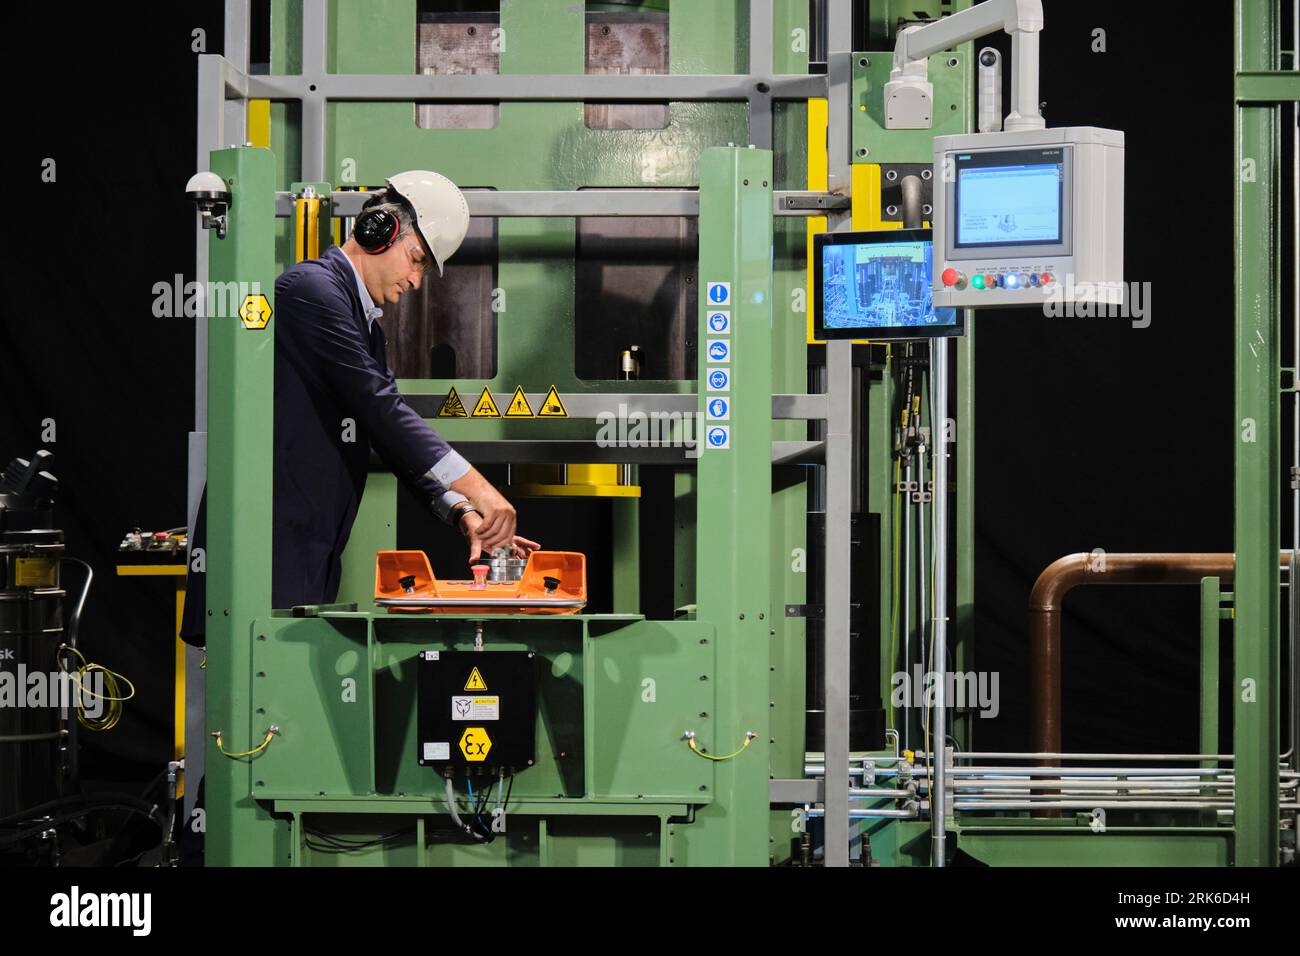 Erstaunliches Bild von industriellen Fabrikeinrichtungen, die technologisch fortschrittlich sind. Werksausstattung Stockfoto